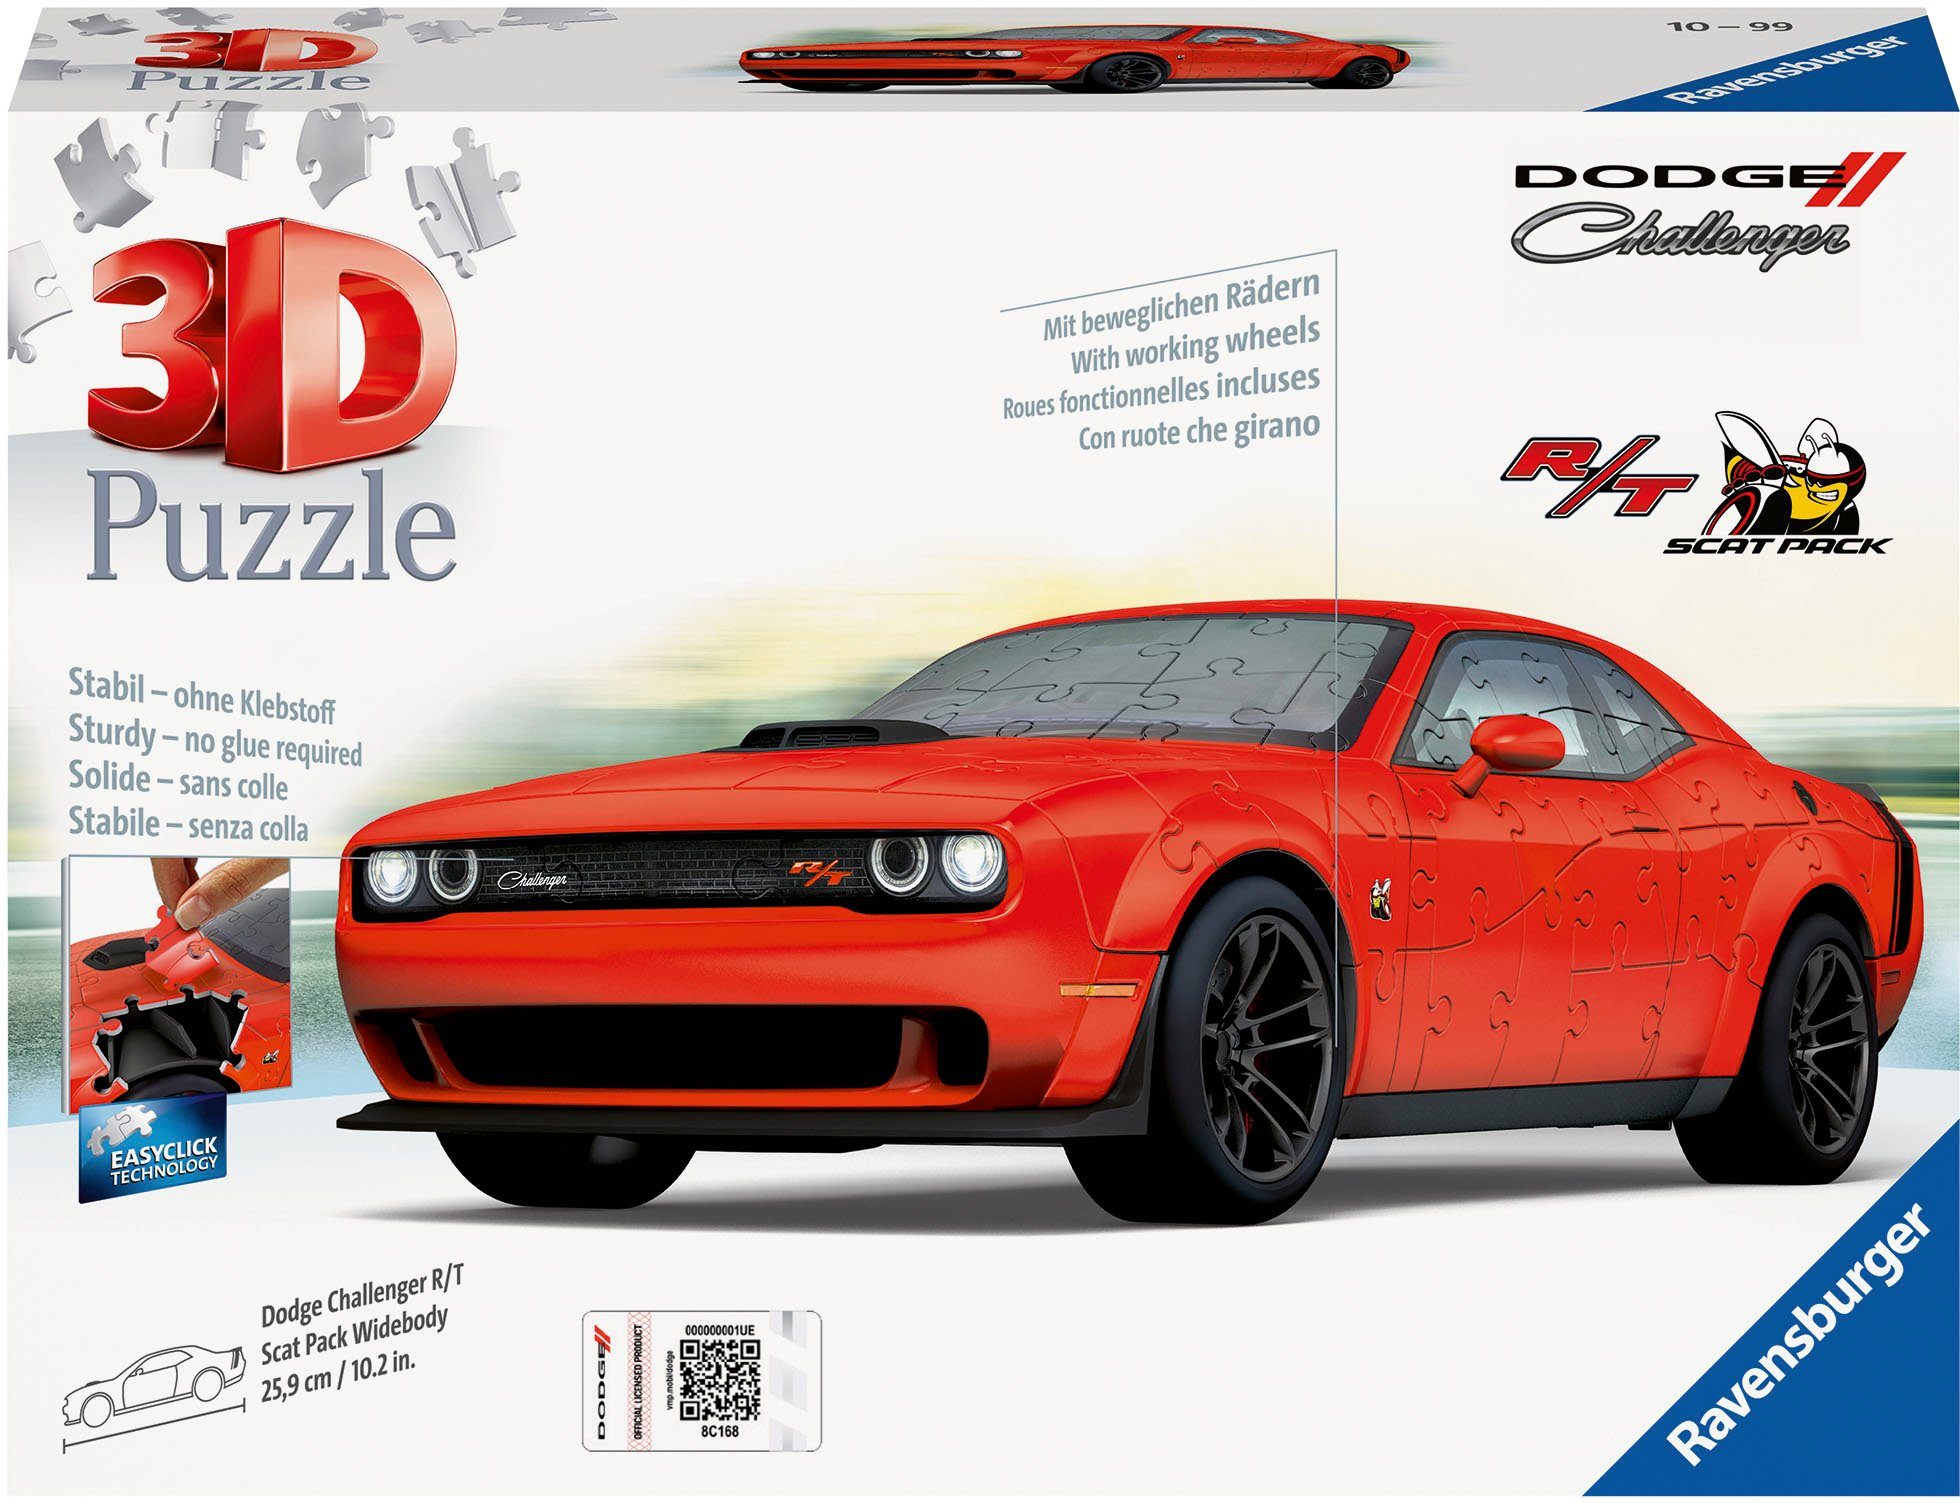 Challenger FSC®- 3D-Puzzle Made in 108 Dodge Ravensburger - Puzzleteile, R/T Pack weltweit schützt Widebody, Scat Wald Europe;